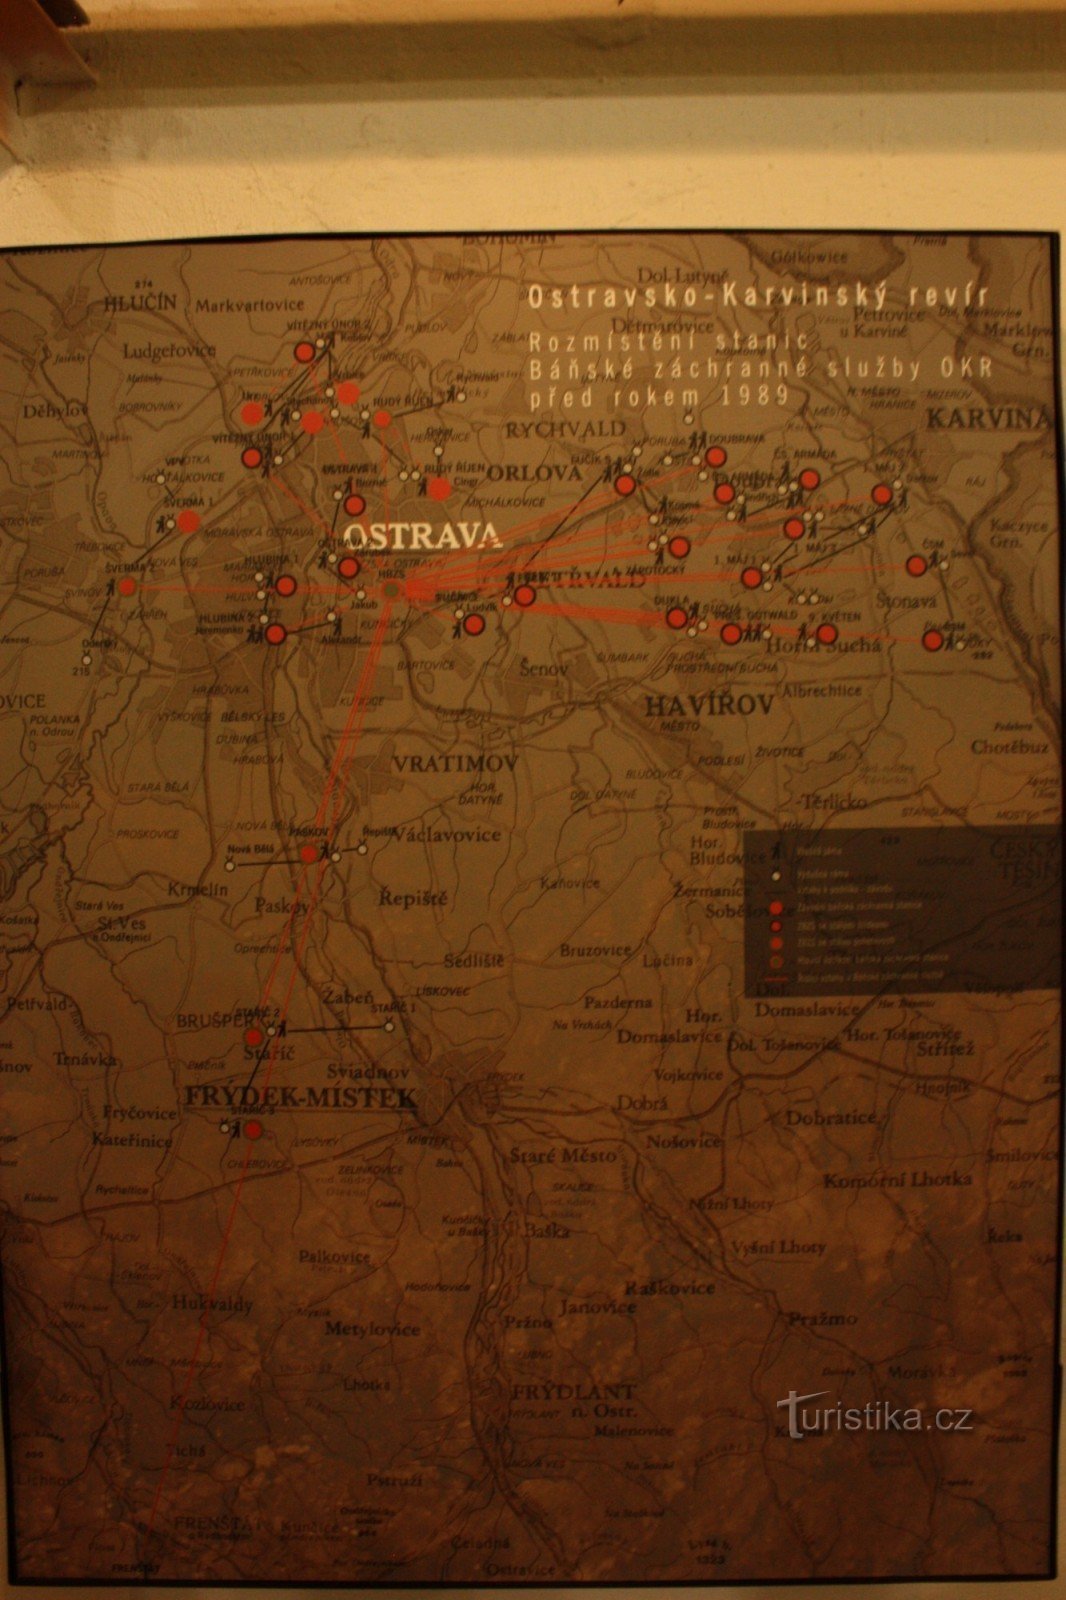 Τοποθεσία σταθμών διάσωσης ορυχείων εντός ΟΚΔ πριν από το 1989